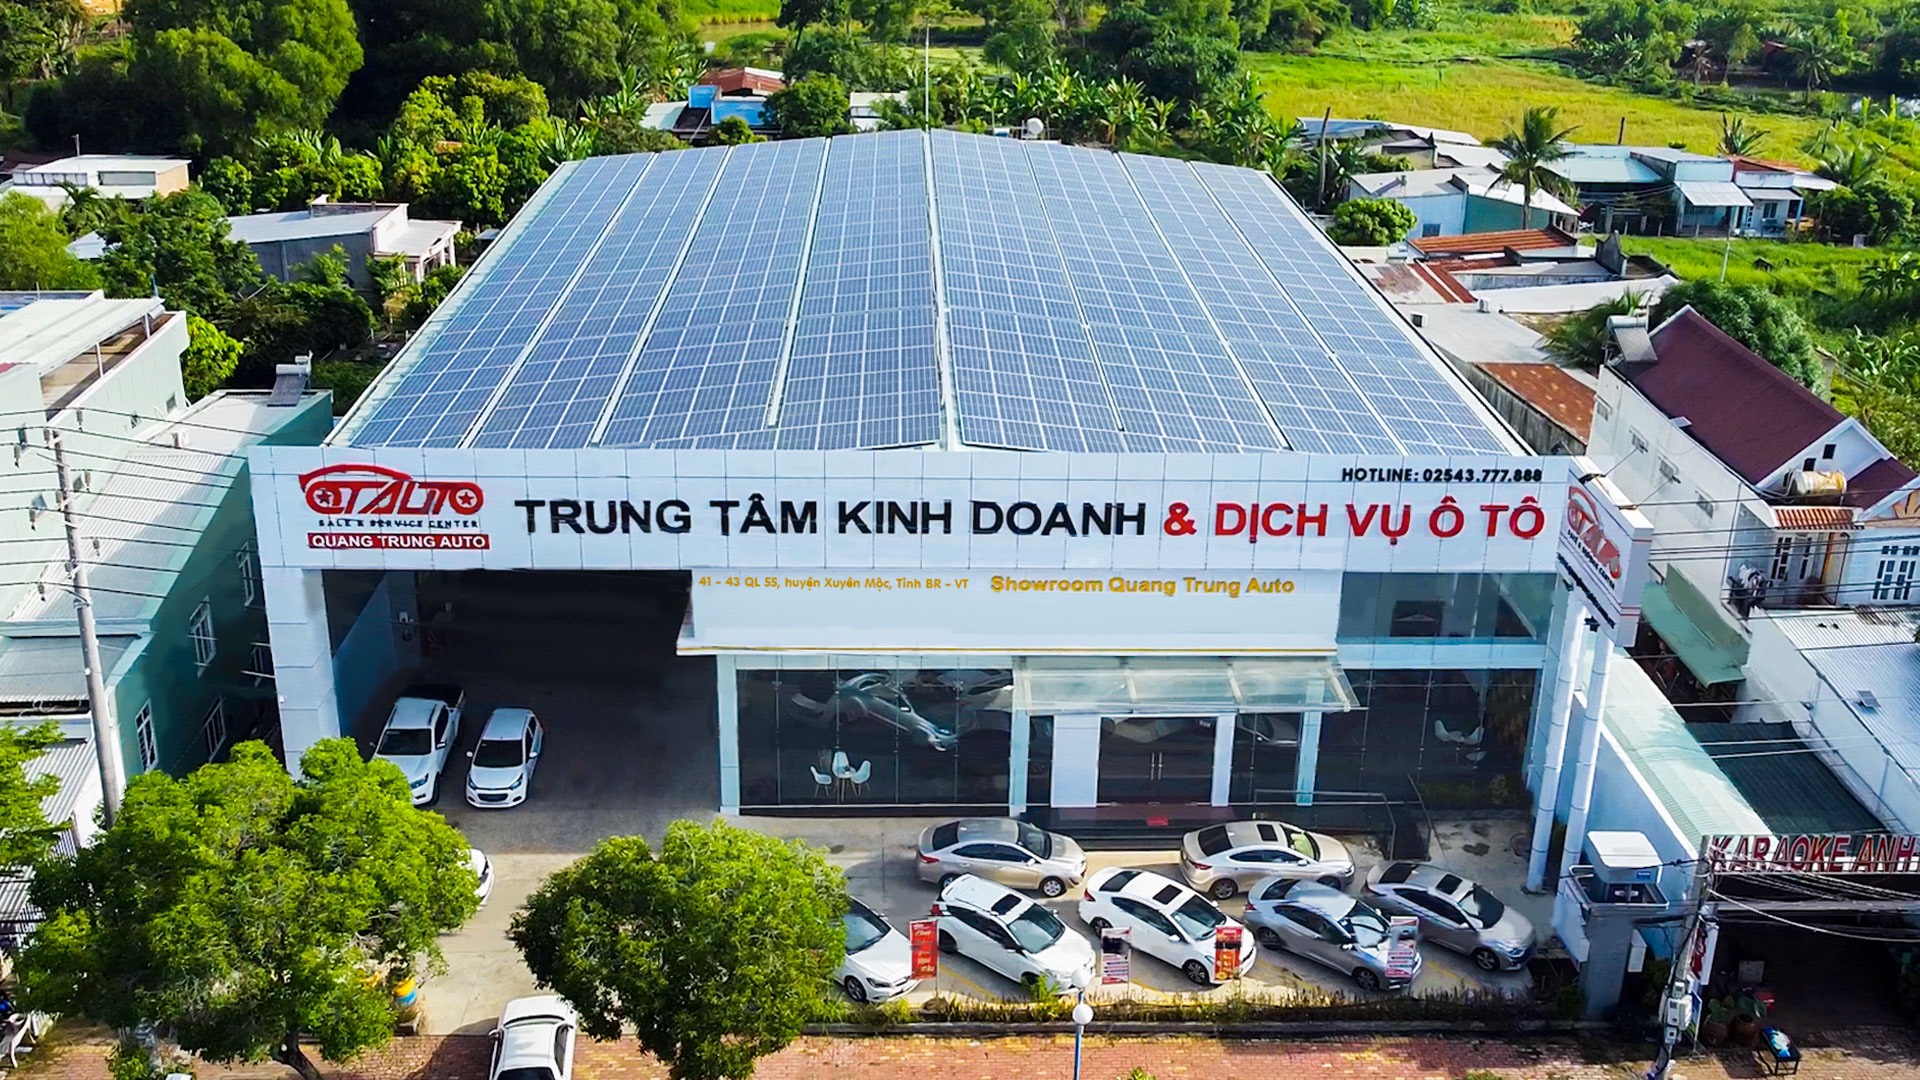 Đừng bỏ lỡ Quang Trung Auto - Garage chuyên sửa chữa và mua bán ô tô uy tín tại Bà Rịa Vũng Tàu - 1